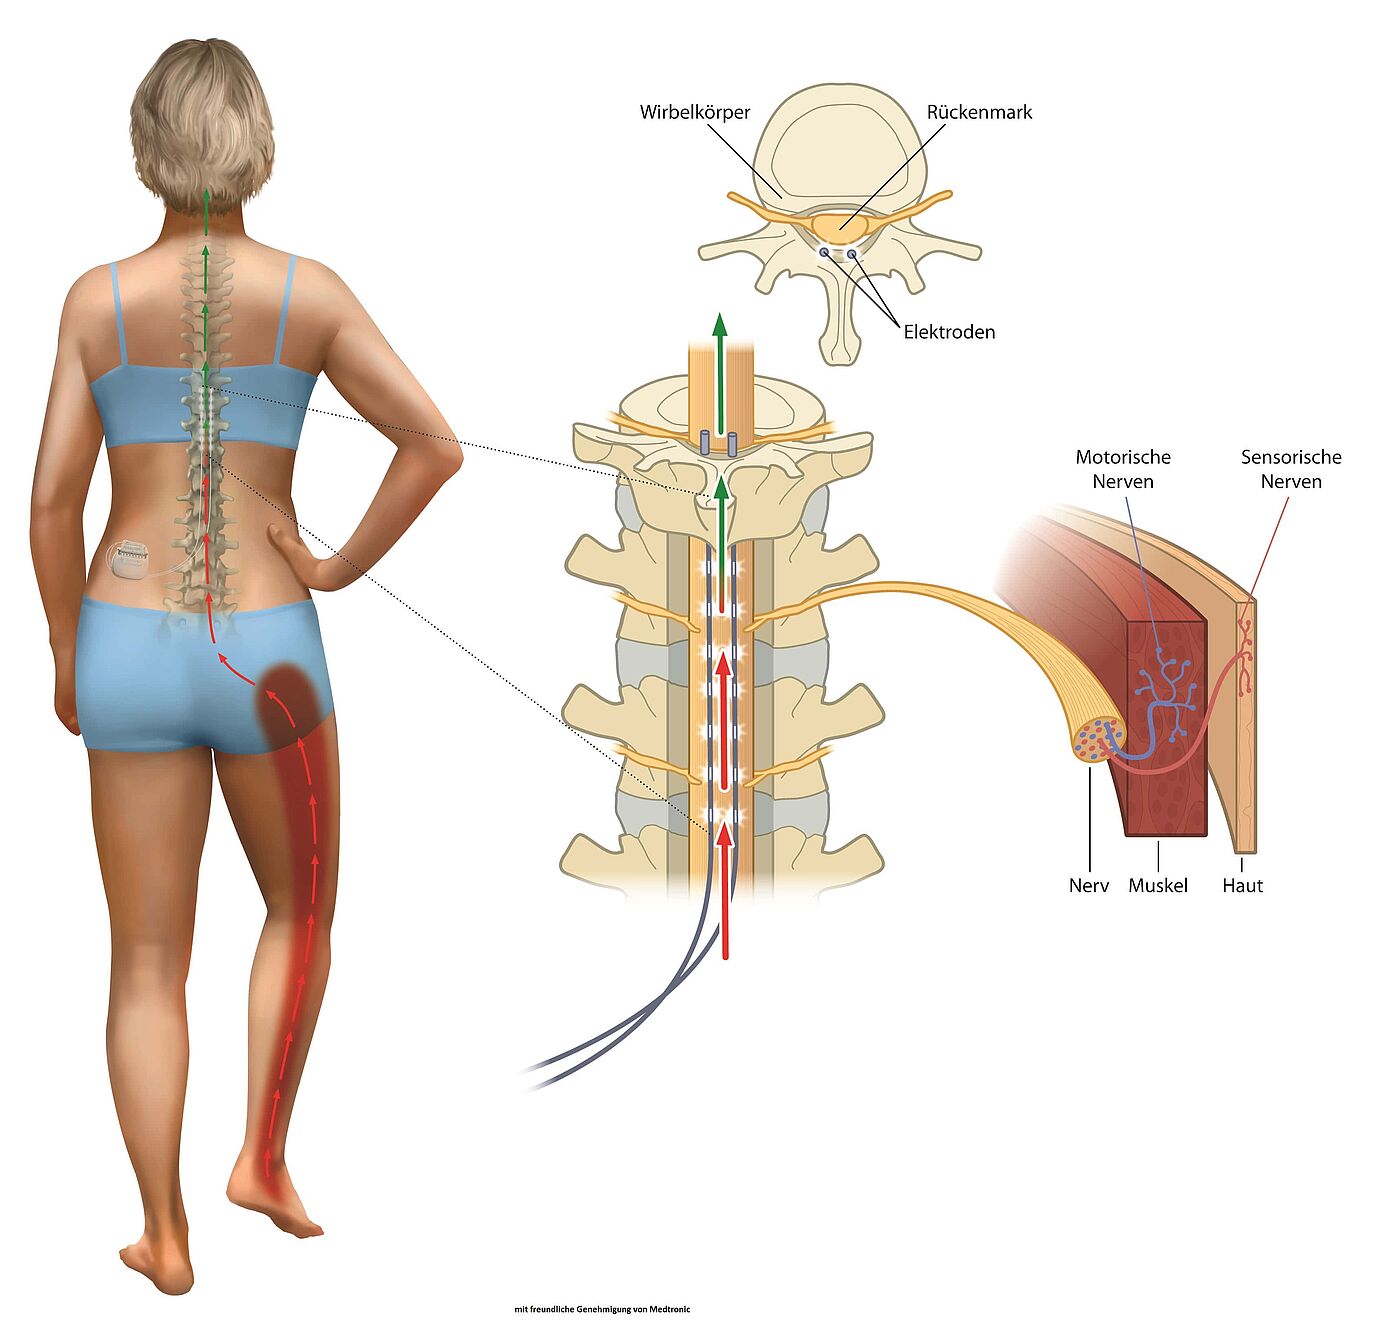 Epidural spine cord stimulation